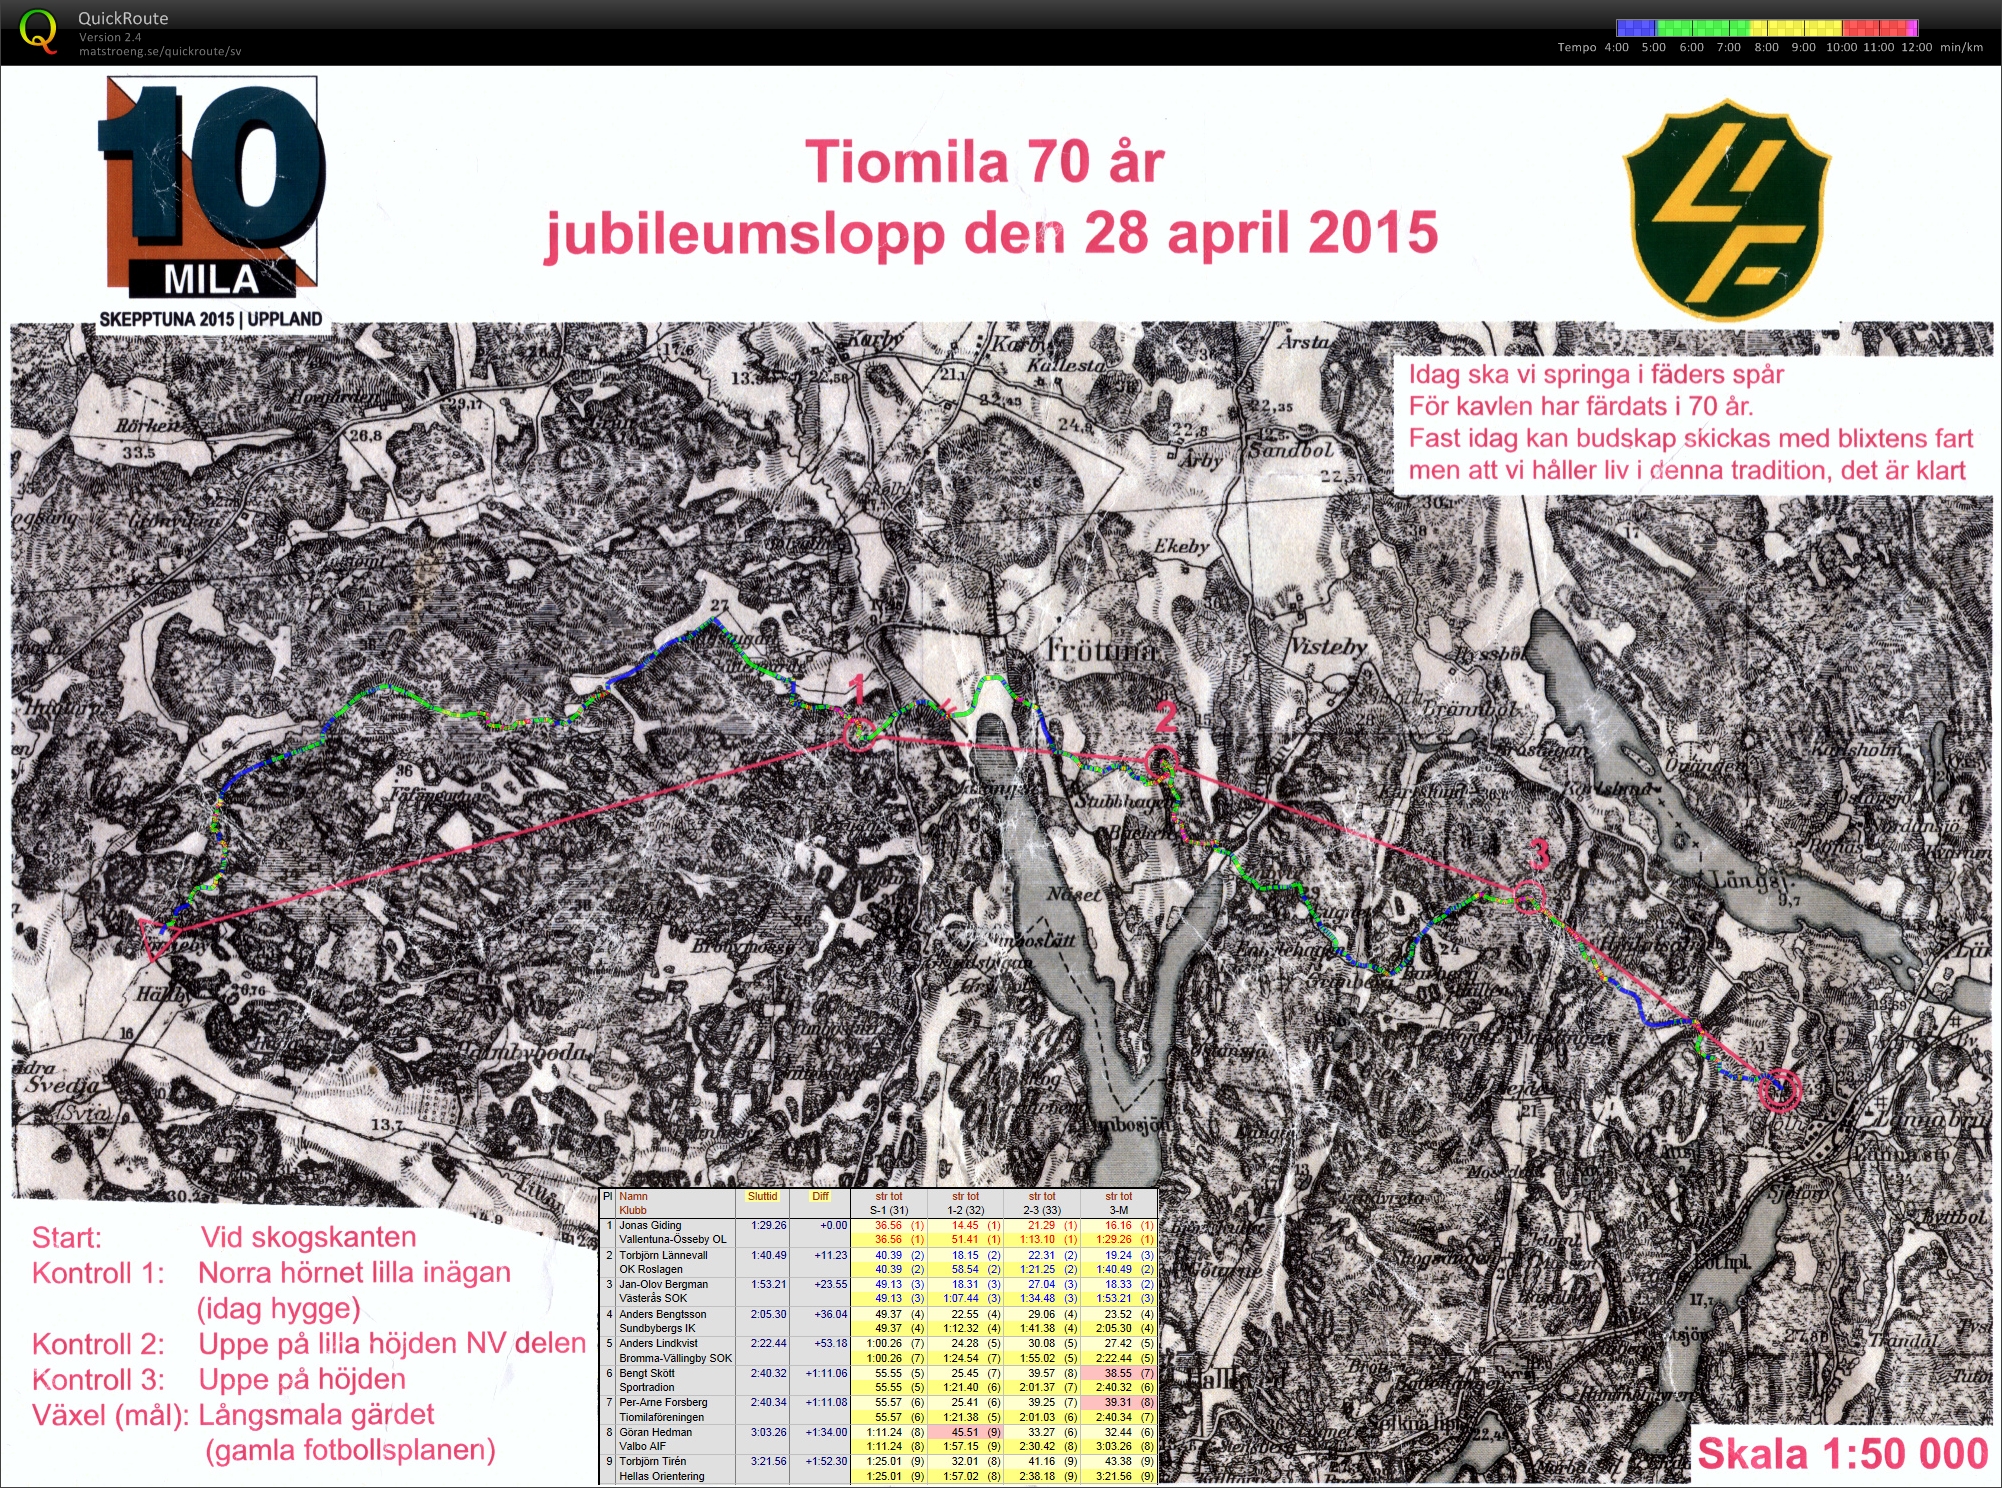 Tiomilas jubileumslopp (28.04.2015)